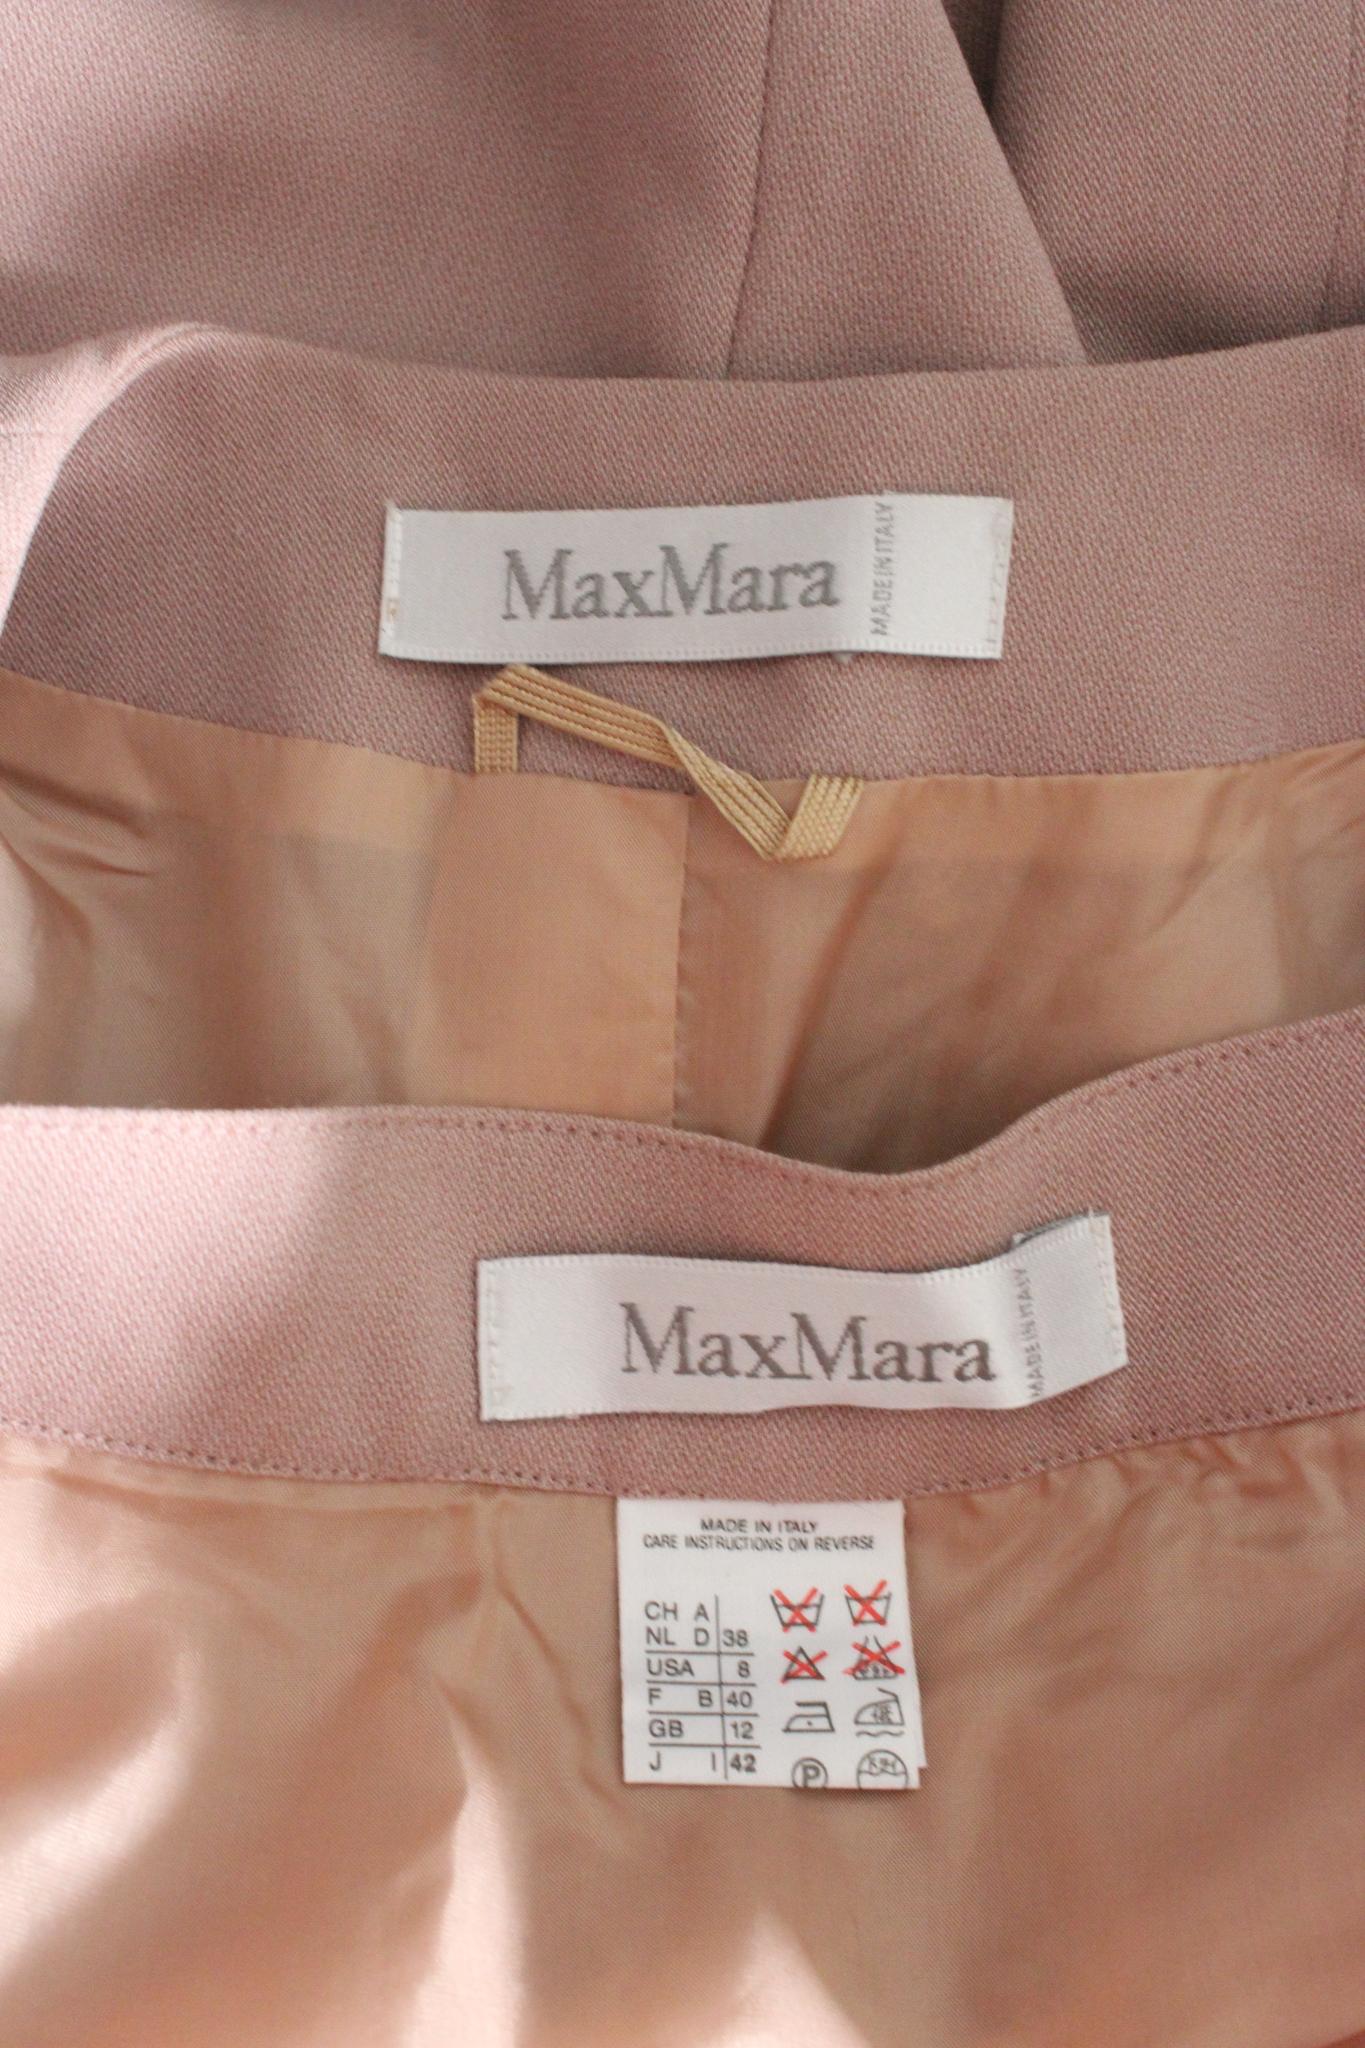 Combinaison jupe classique des années 90 de Max Mara. Tailleur en couleur lilas, 80% laine, 20% viscose. Fabriqué en Italie.

Taille : 42 It 8 Us 10 Uk

Epaule : 44cm
Buste/Poitrine : 49 cm
Manches : 60cm
Longueur : 61 cm
Taille de la jupe :